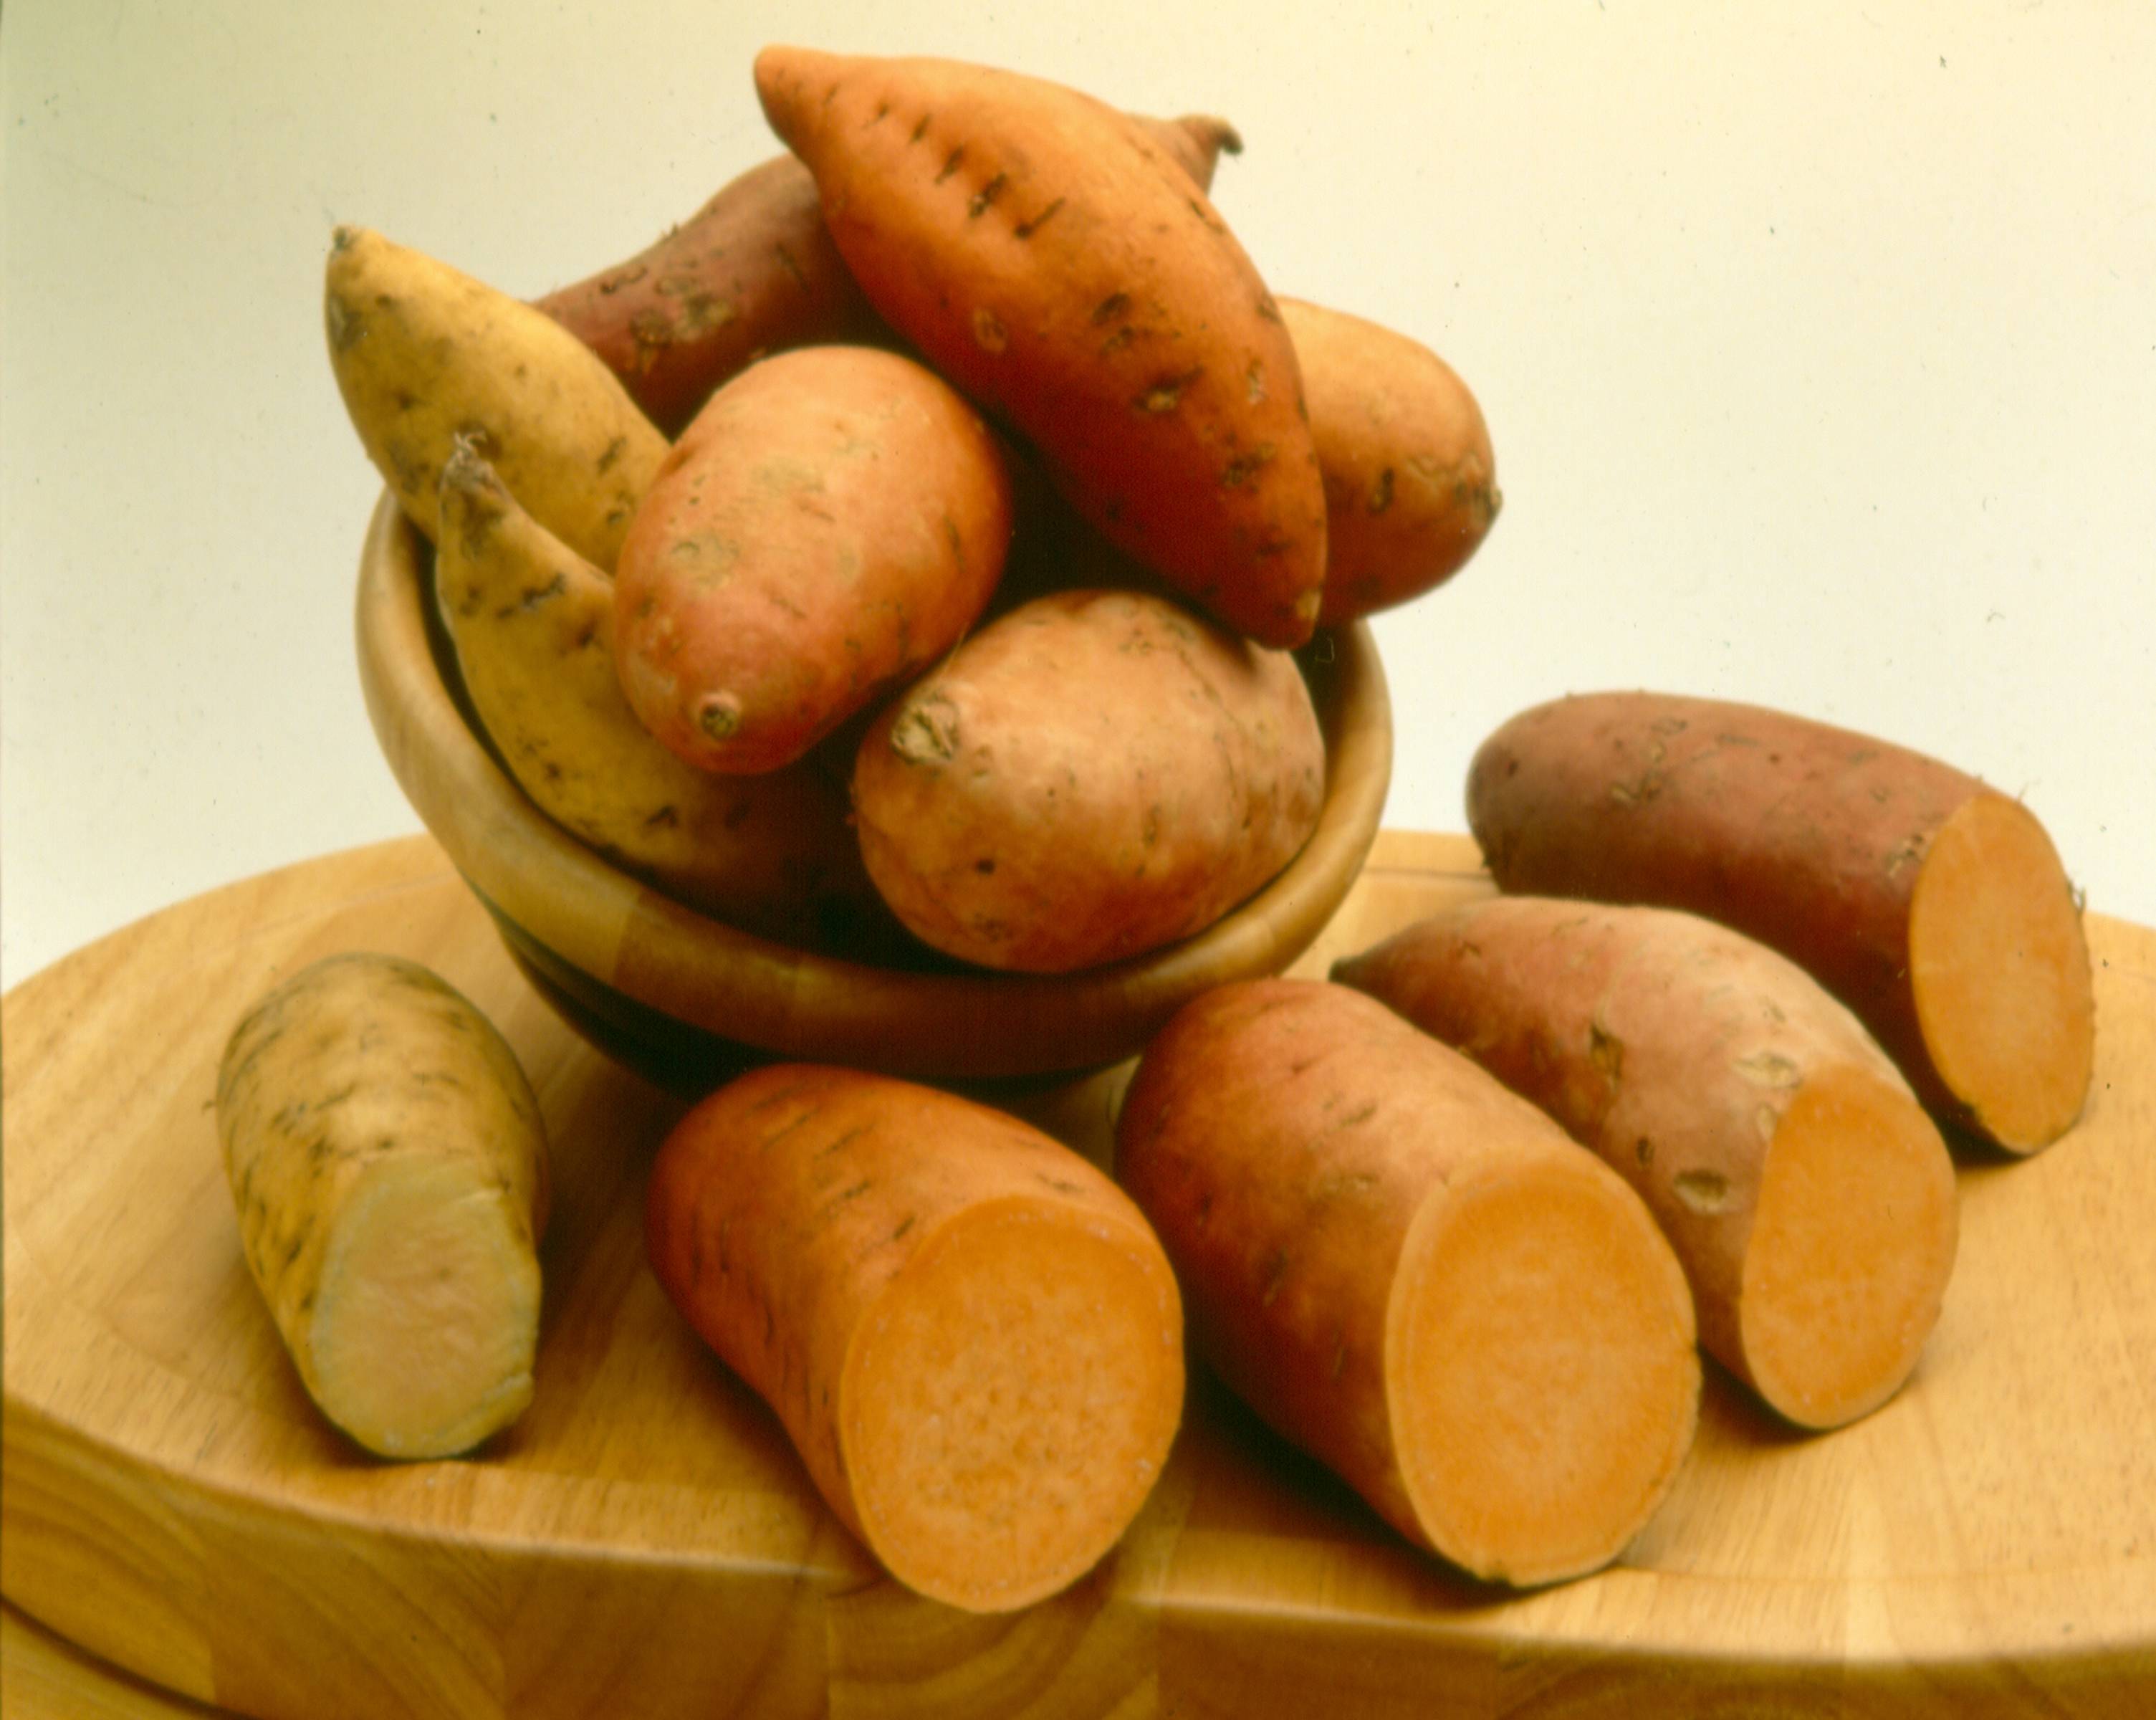 Батат – полезные свойства и вред сладкого картофеля